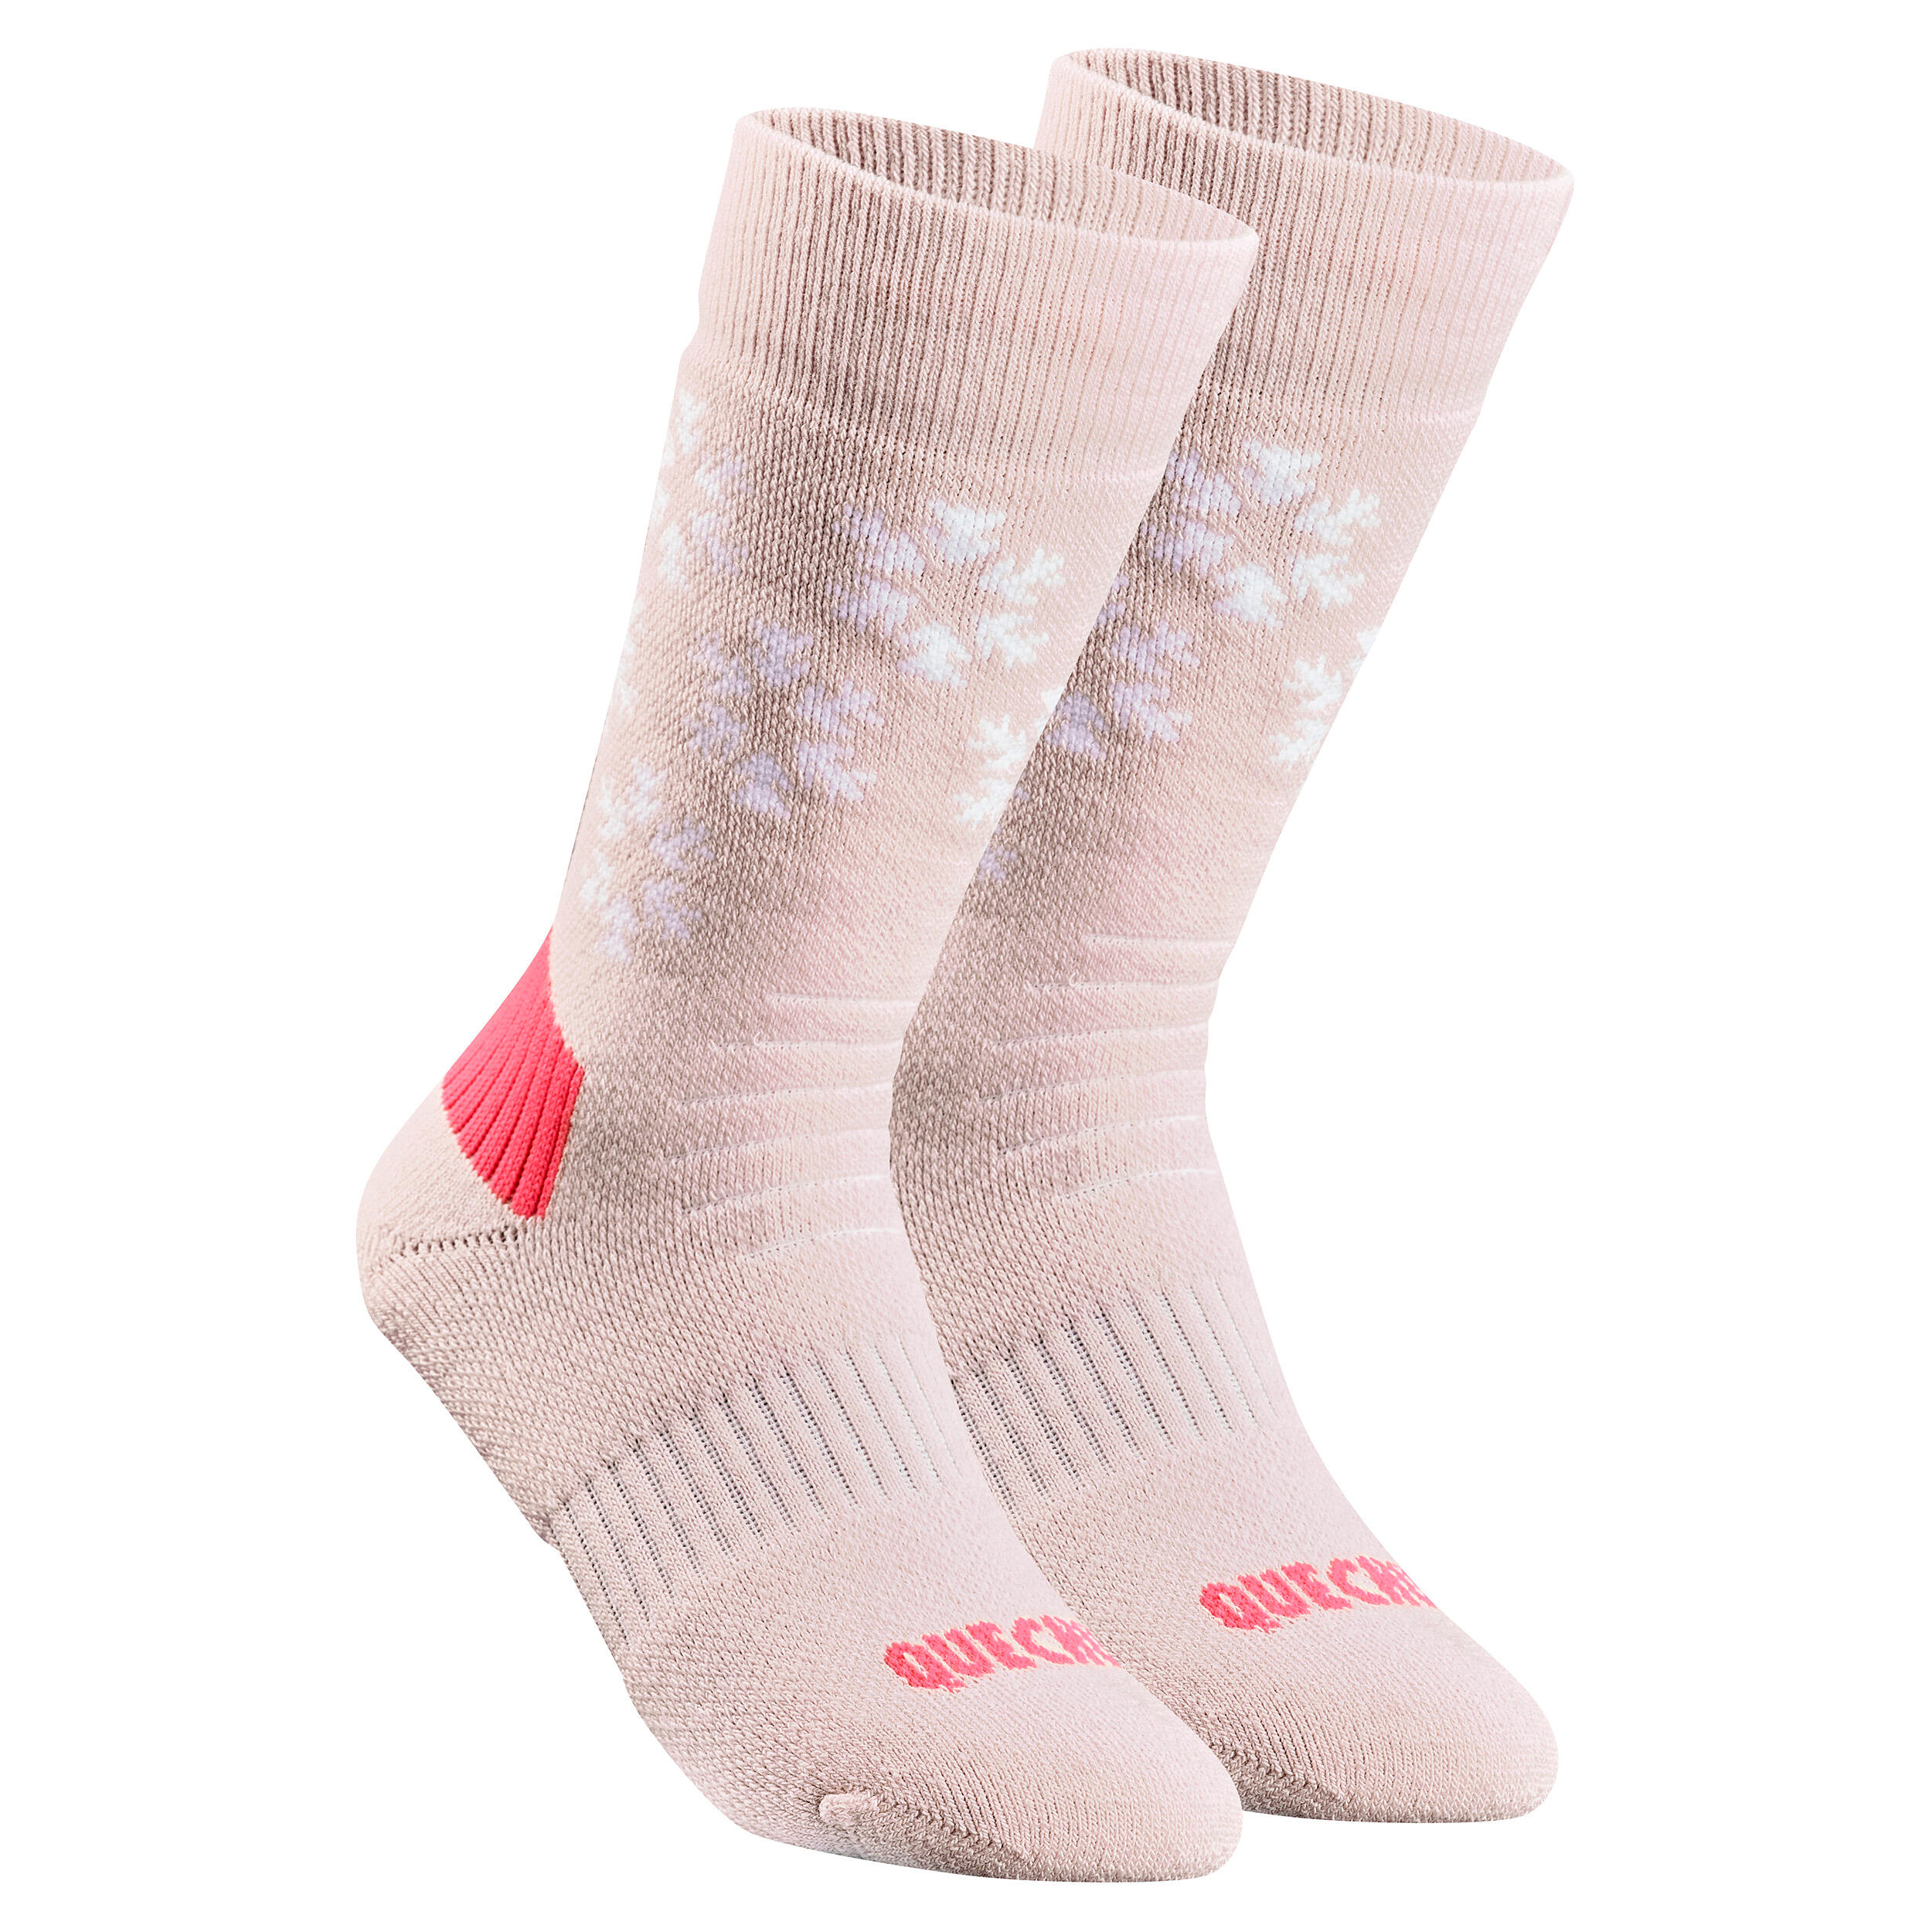 Kids’ Warm Hiking Socks SH100 Mid 2 Pairs 5/9